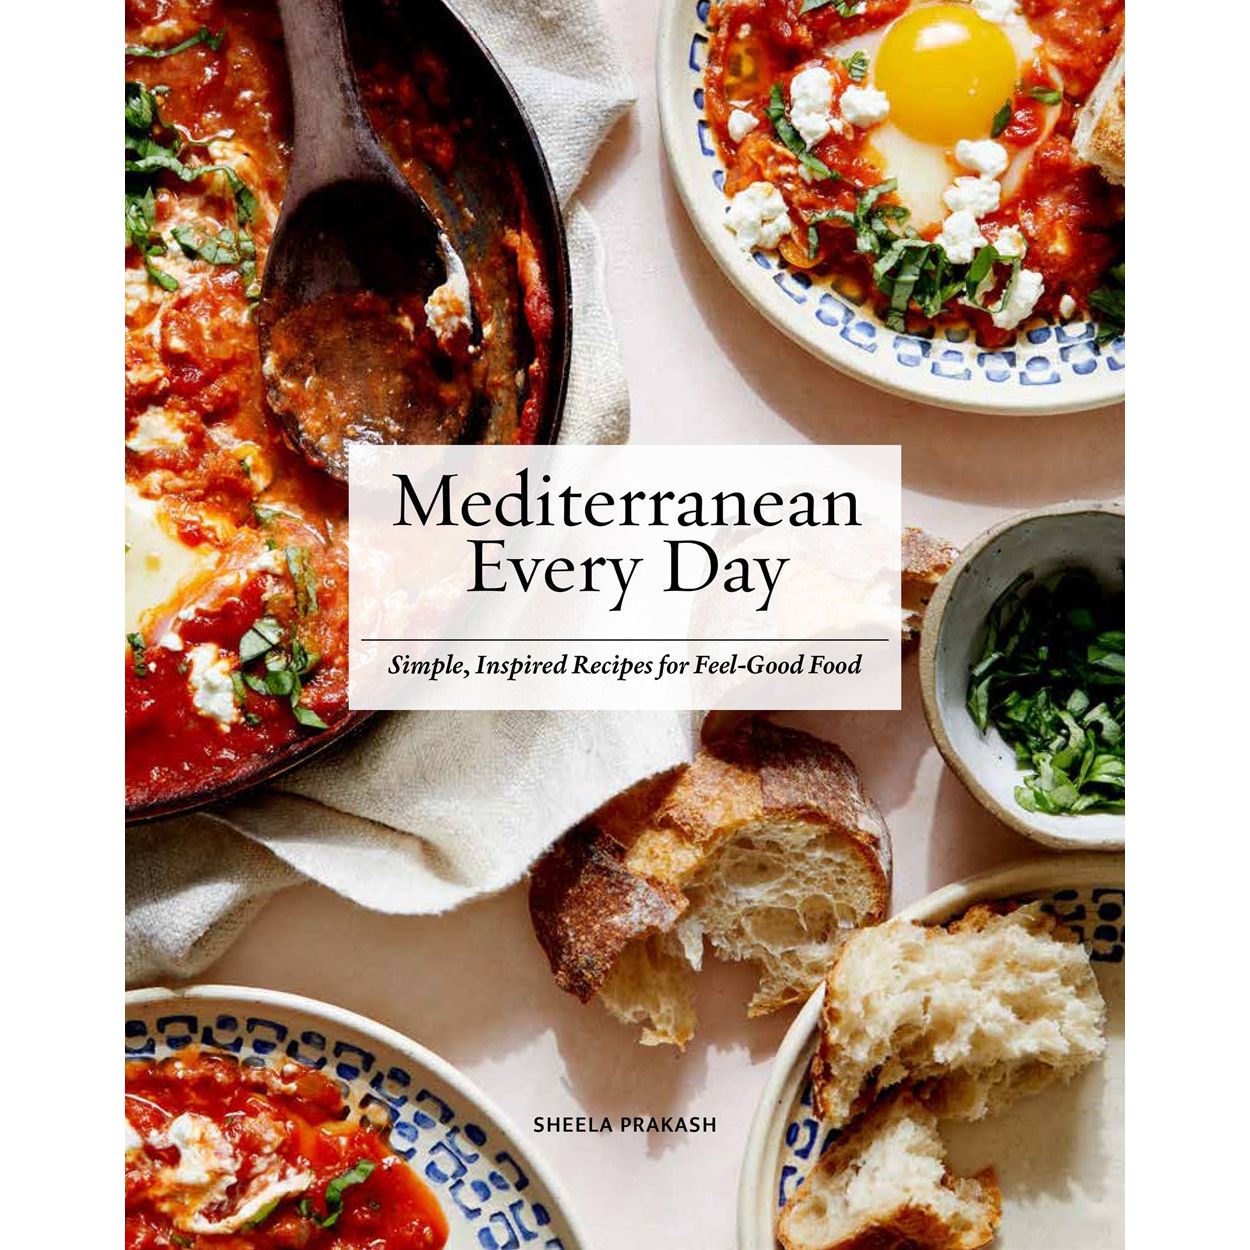 Mediterranean Every Day (Sheela Praakash)